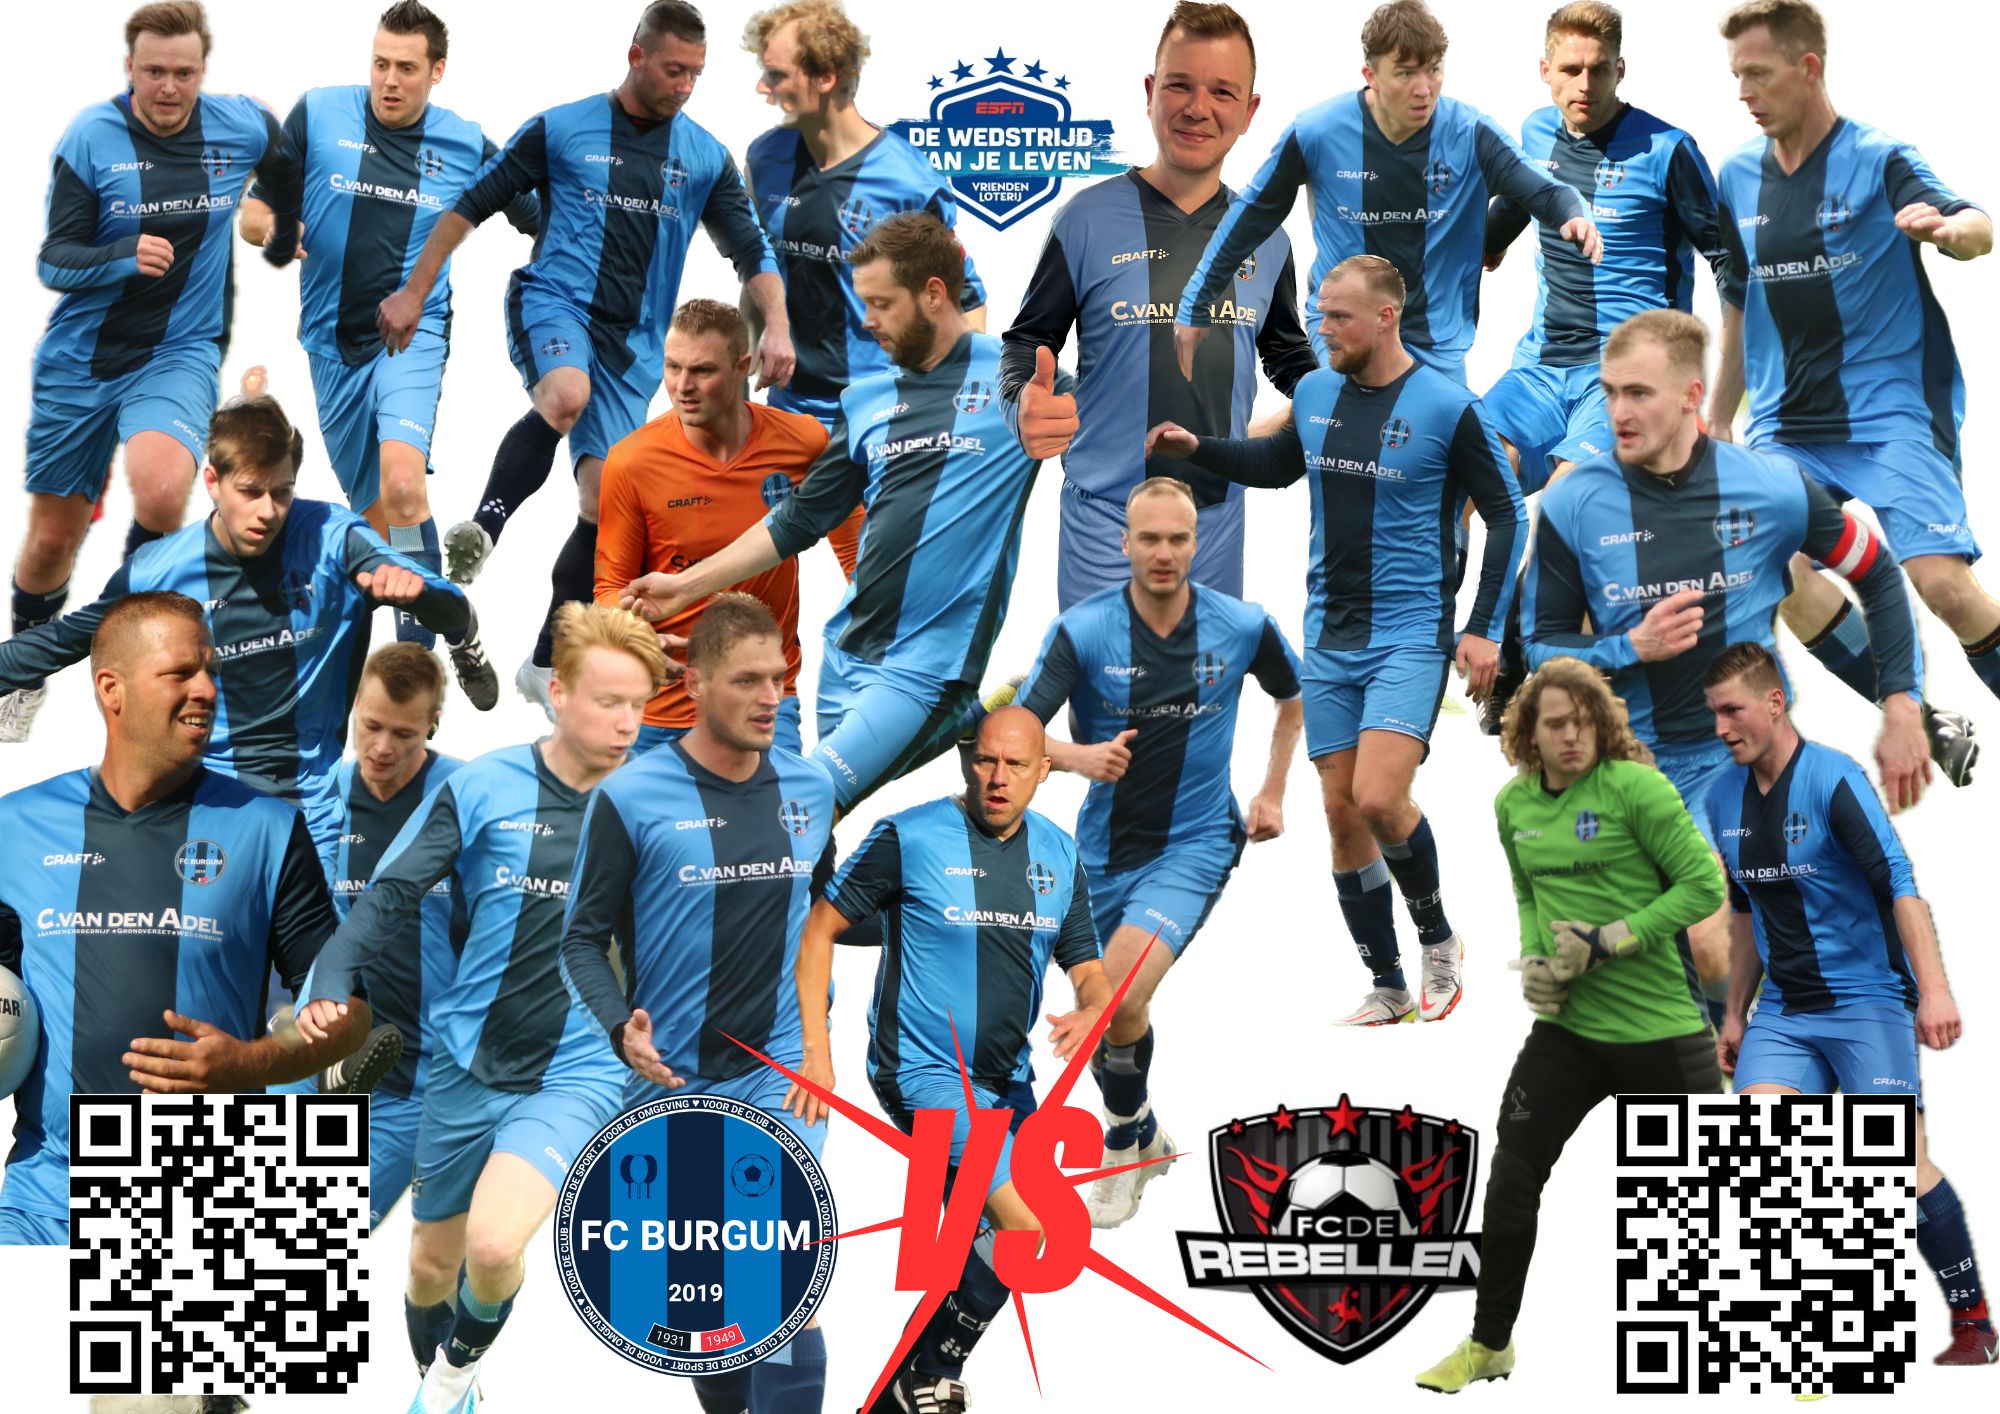 Stem op FC Burgum Zondag 1 voor de wedstrijd van je leven!